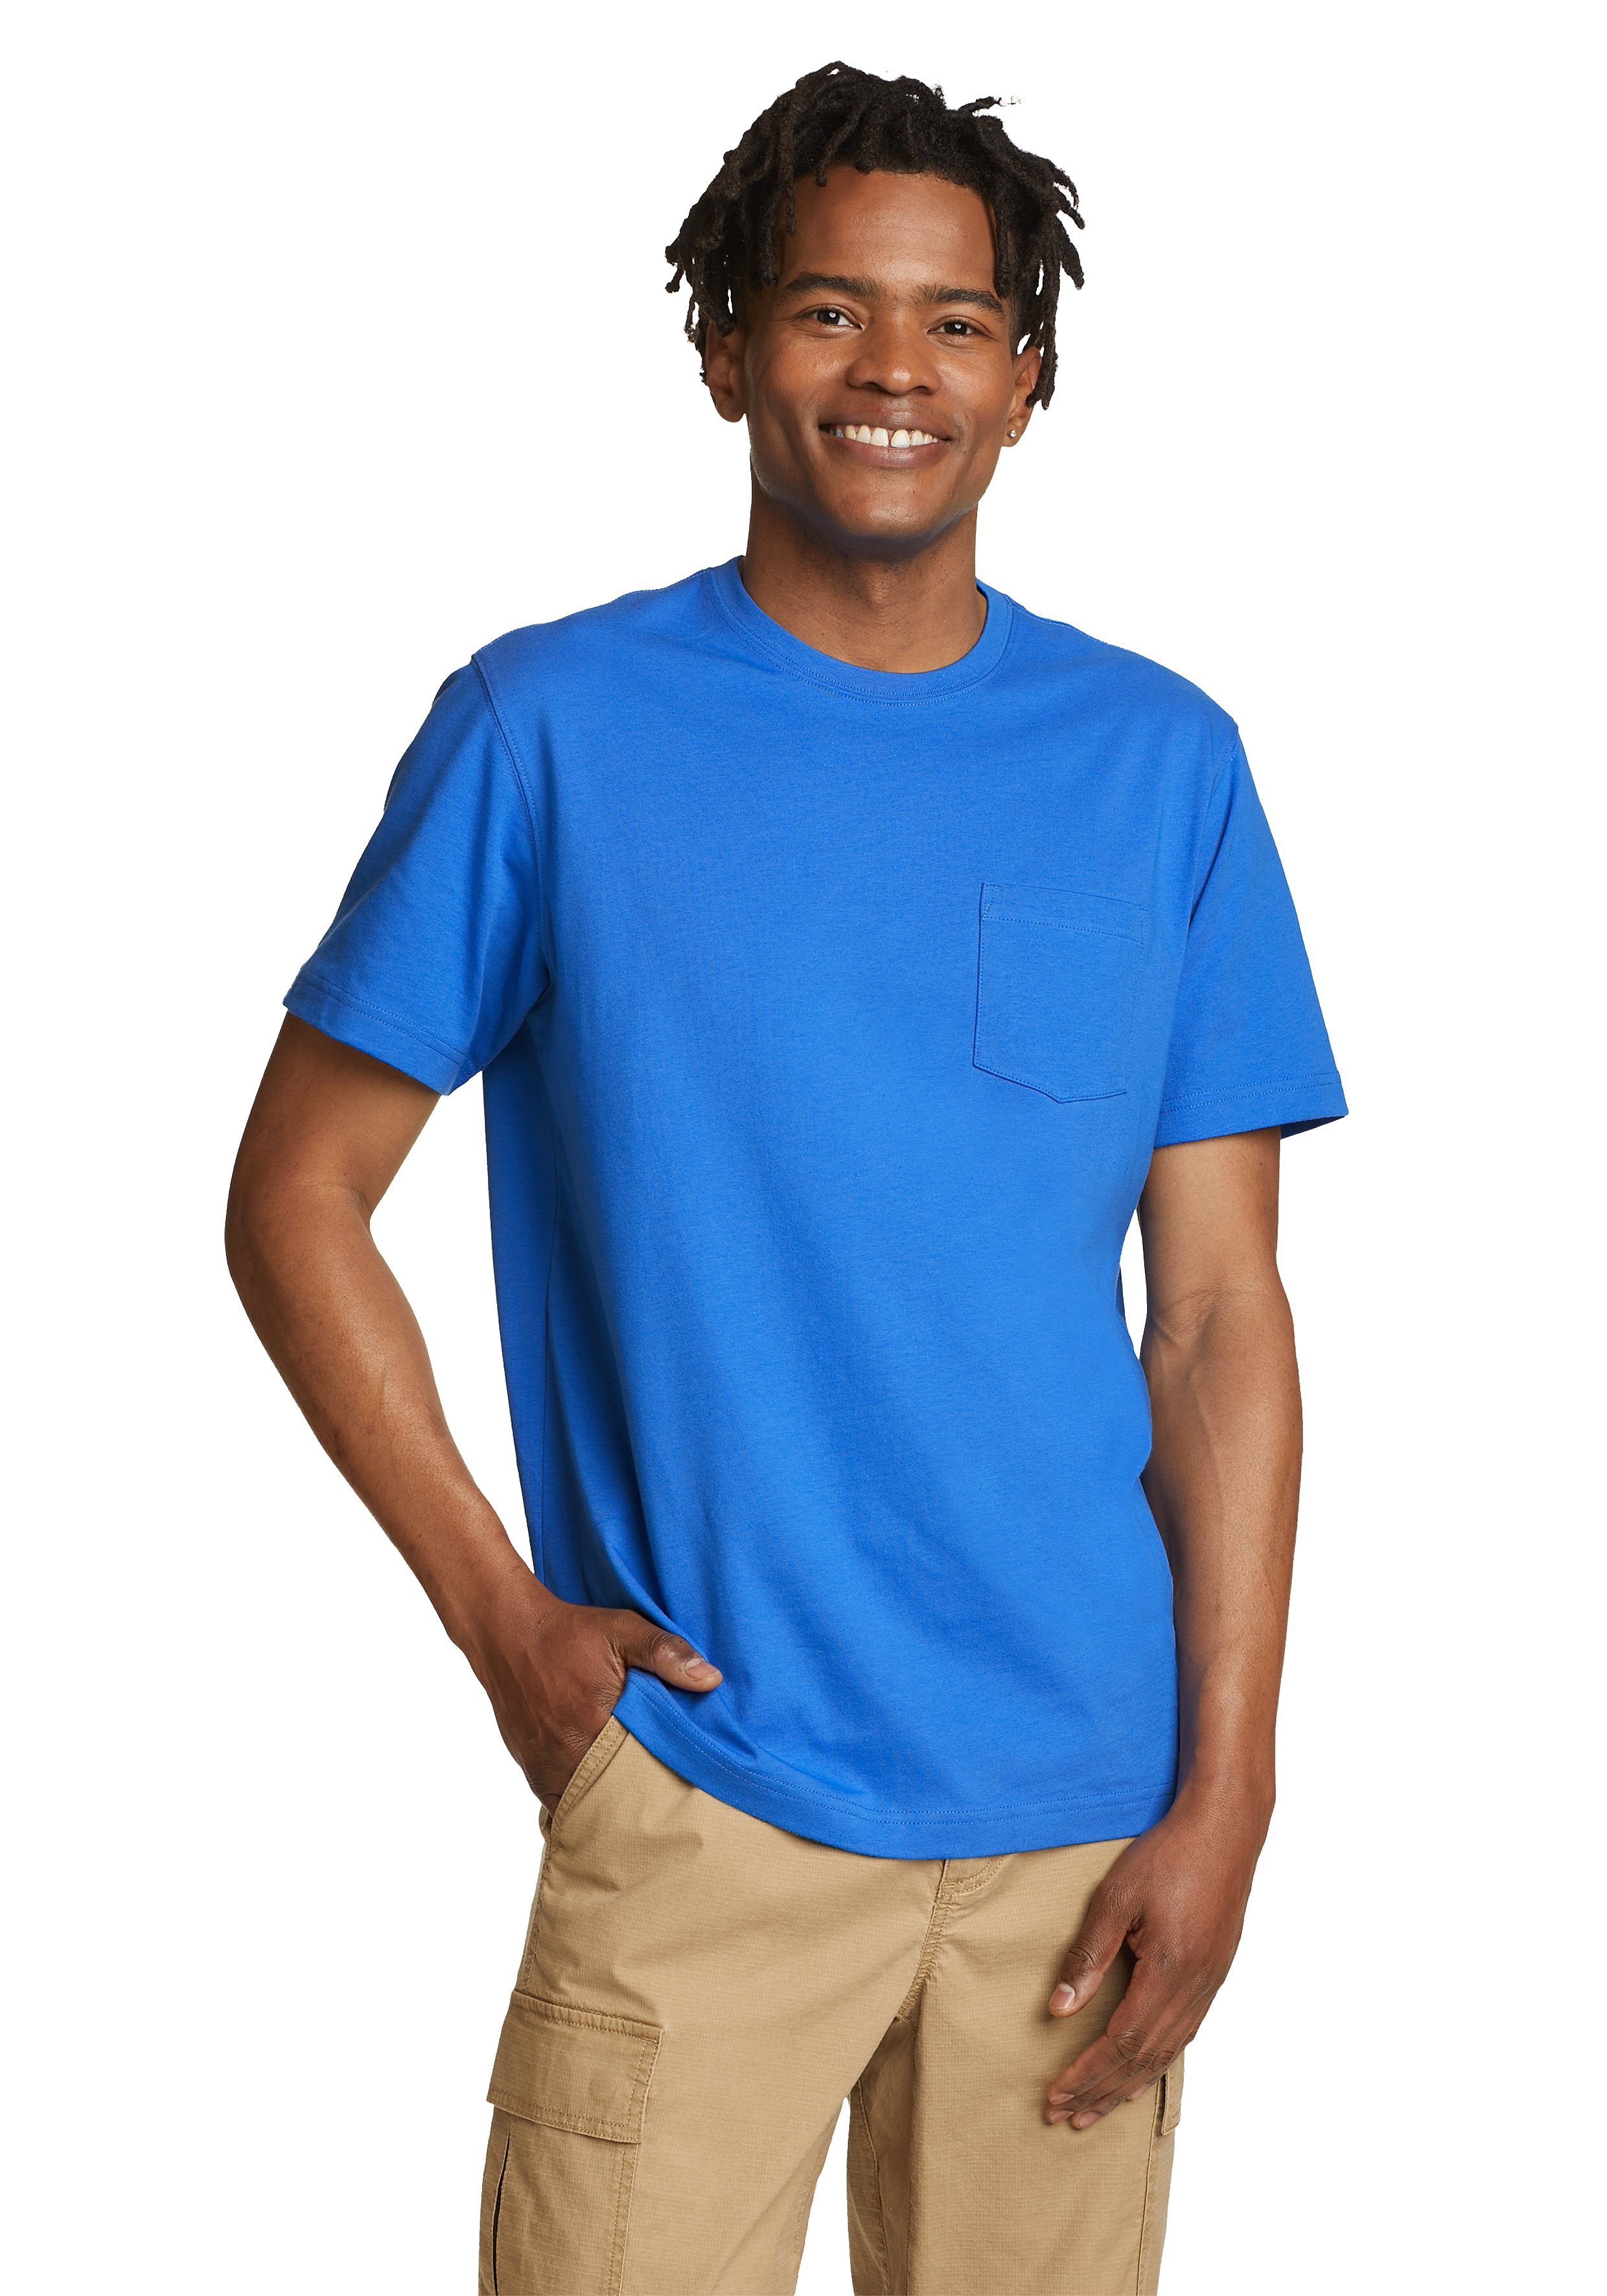 Eddie Bauer T-Shirt Legend 100% Wash Pro Blau mit Kurzarm Brilliantes Shirt Baumwolle Tasche 